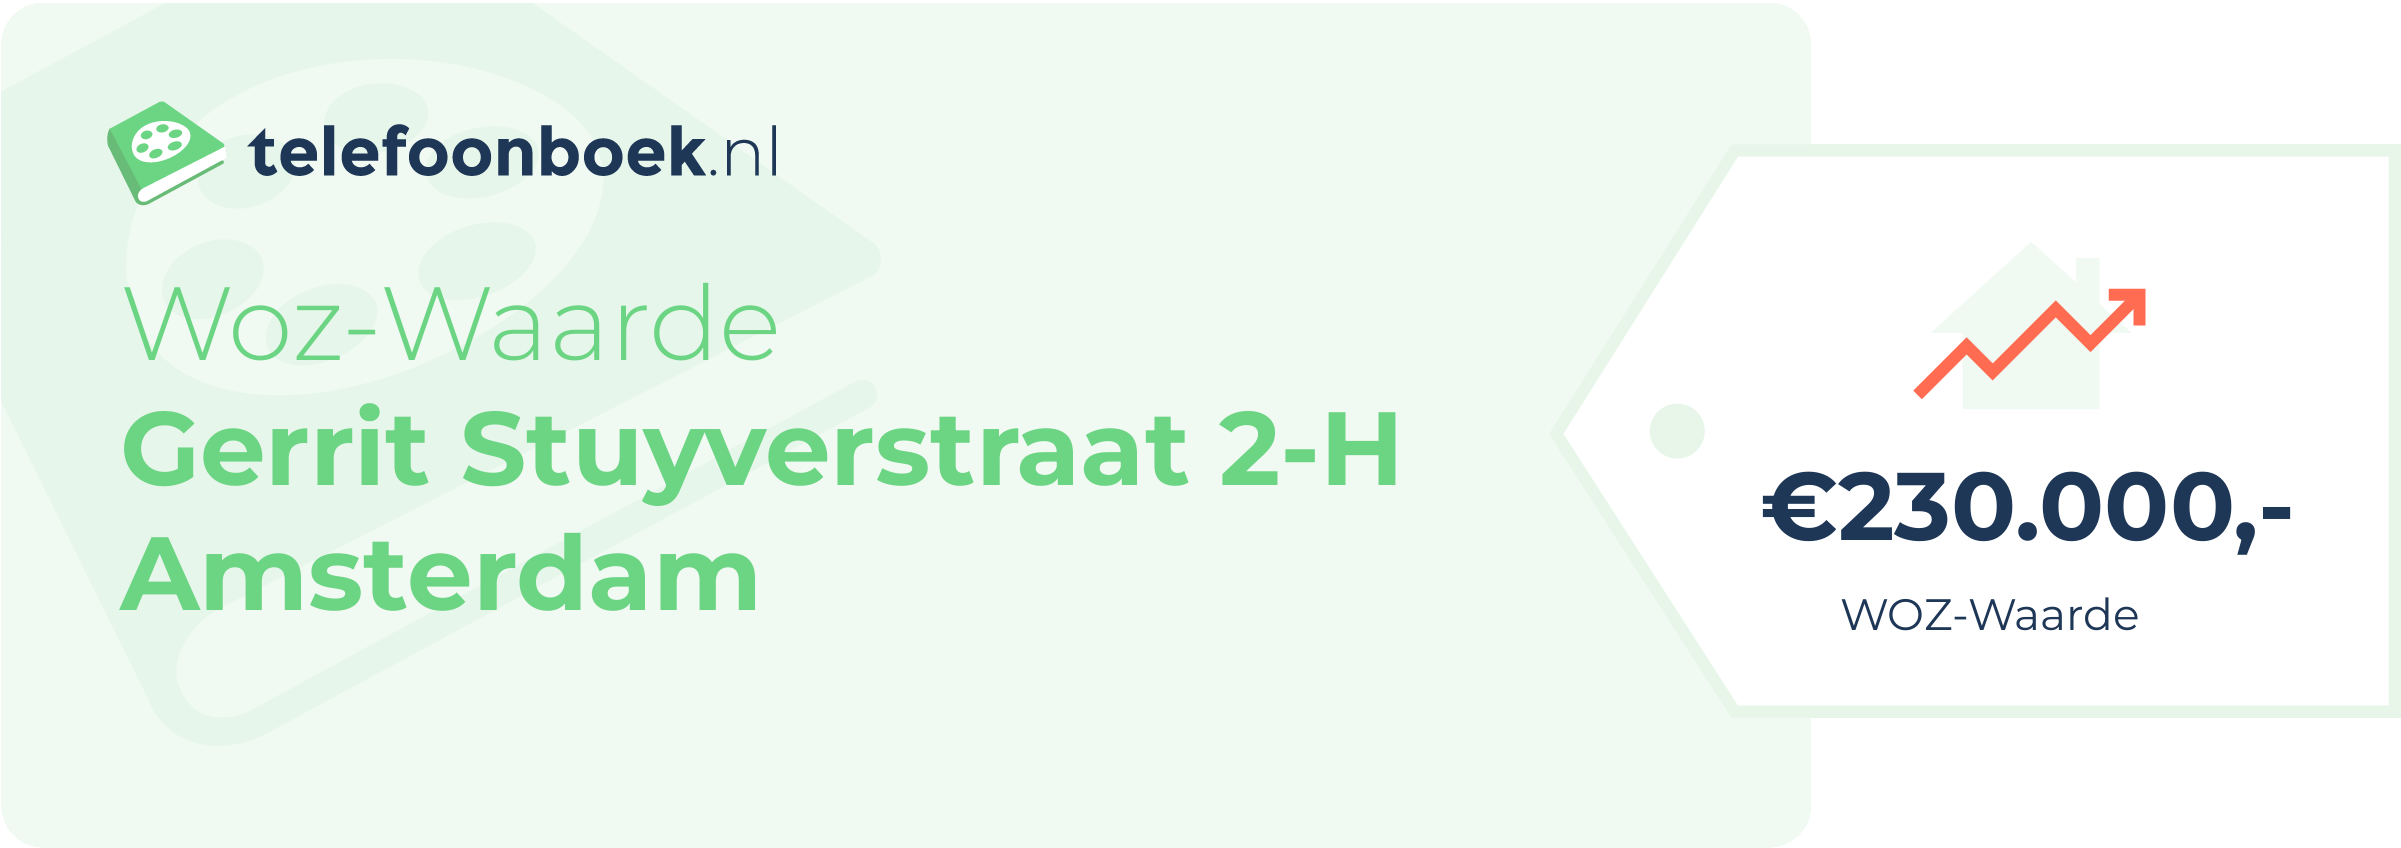 WOZ-waarde Gerrit Stuyverstraat 2-H Amsterdam